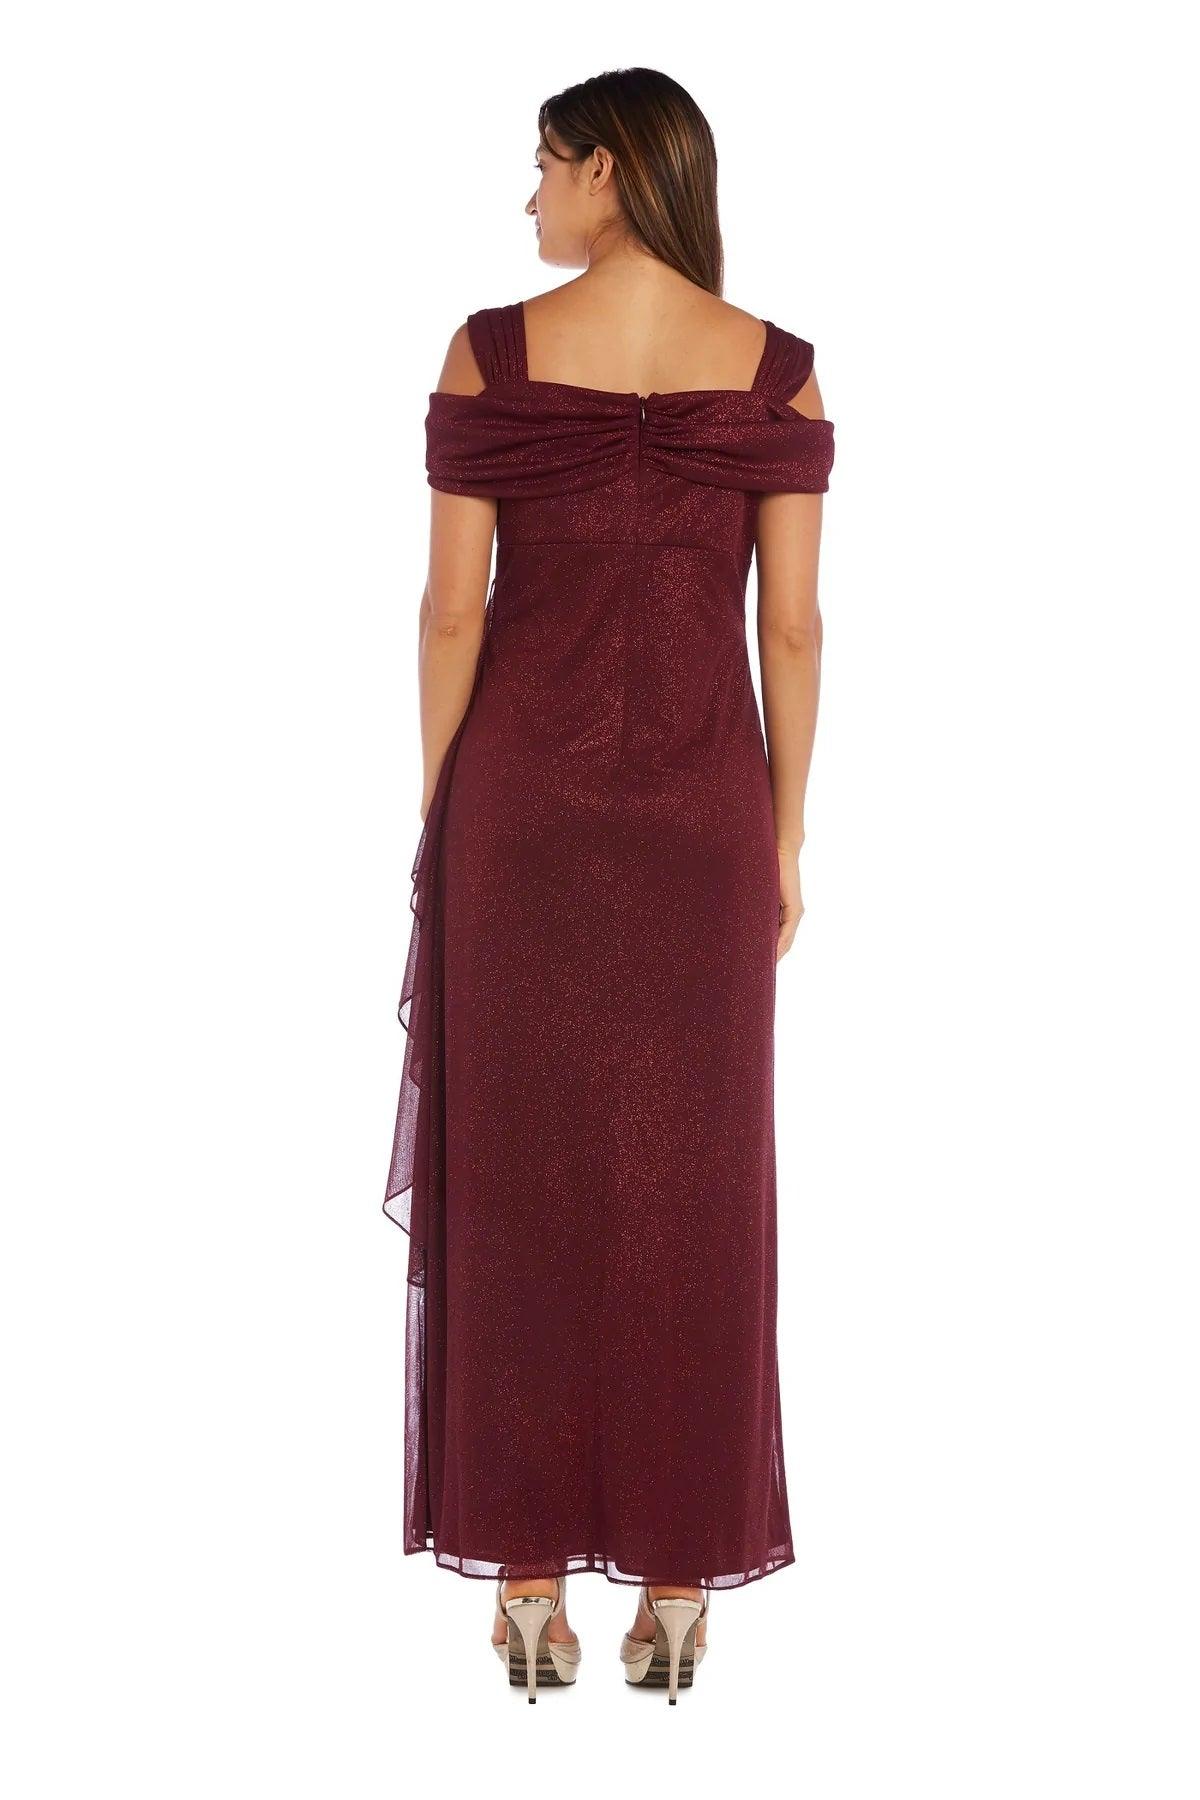 R&M Richards Long Off Shoulder Formal Dress 2061 - The Dress Outlet